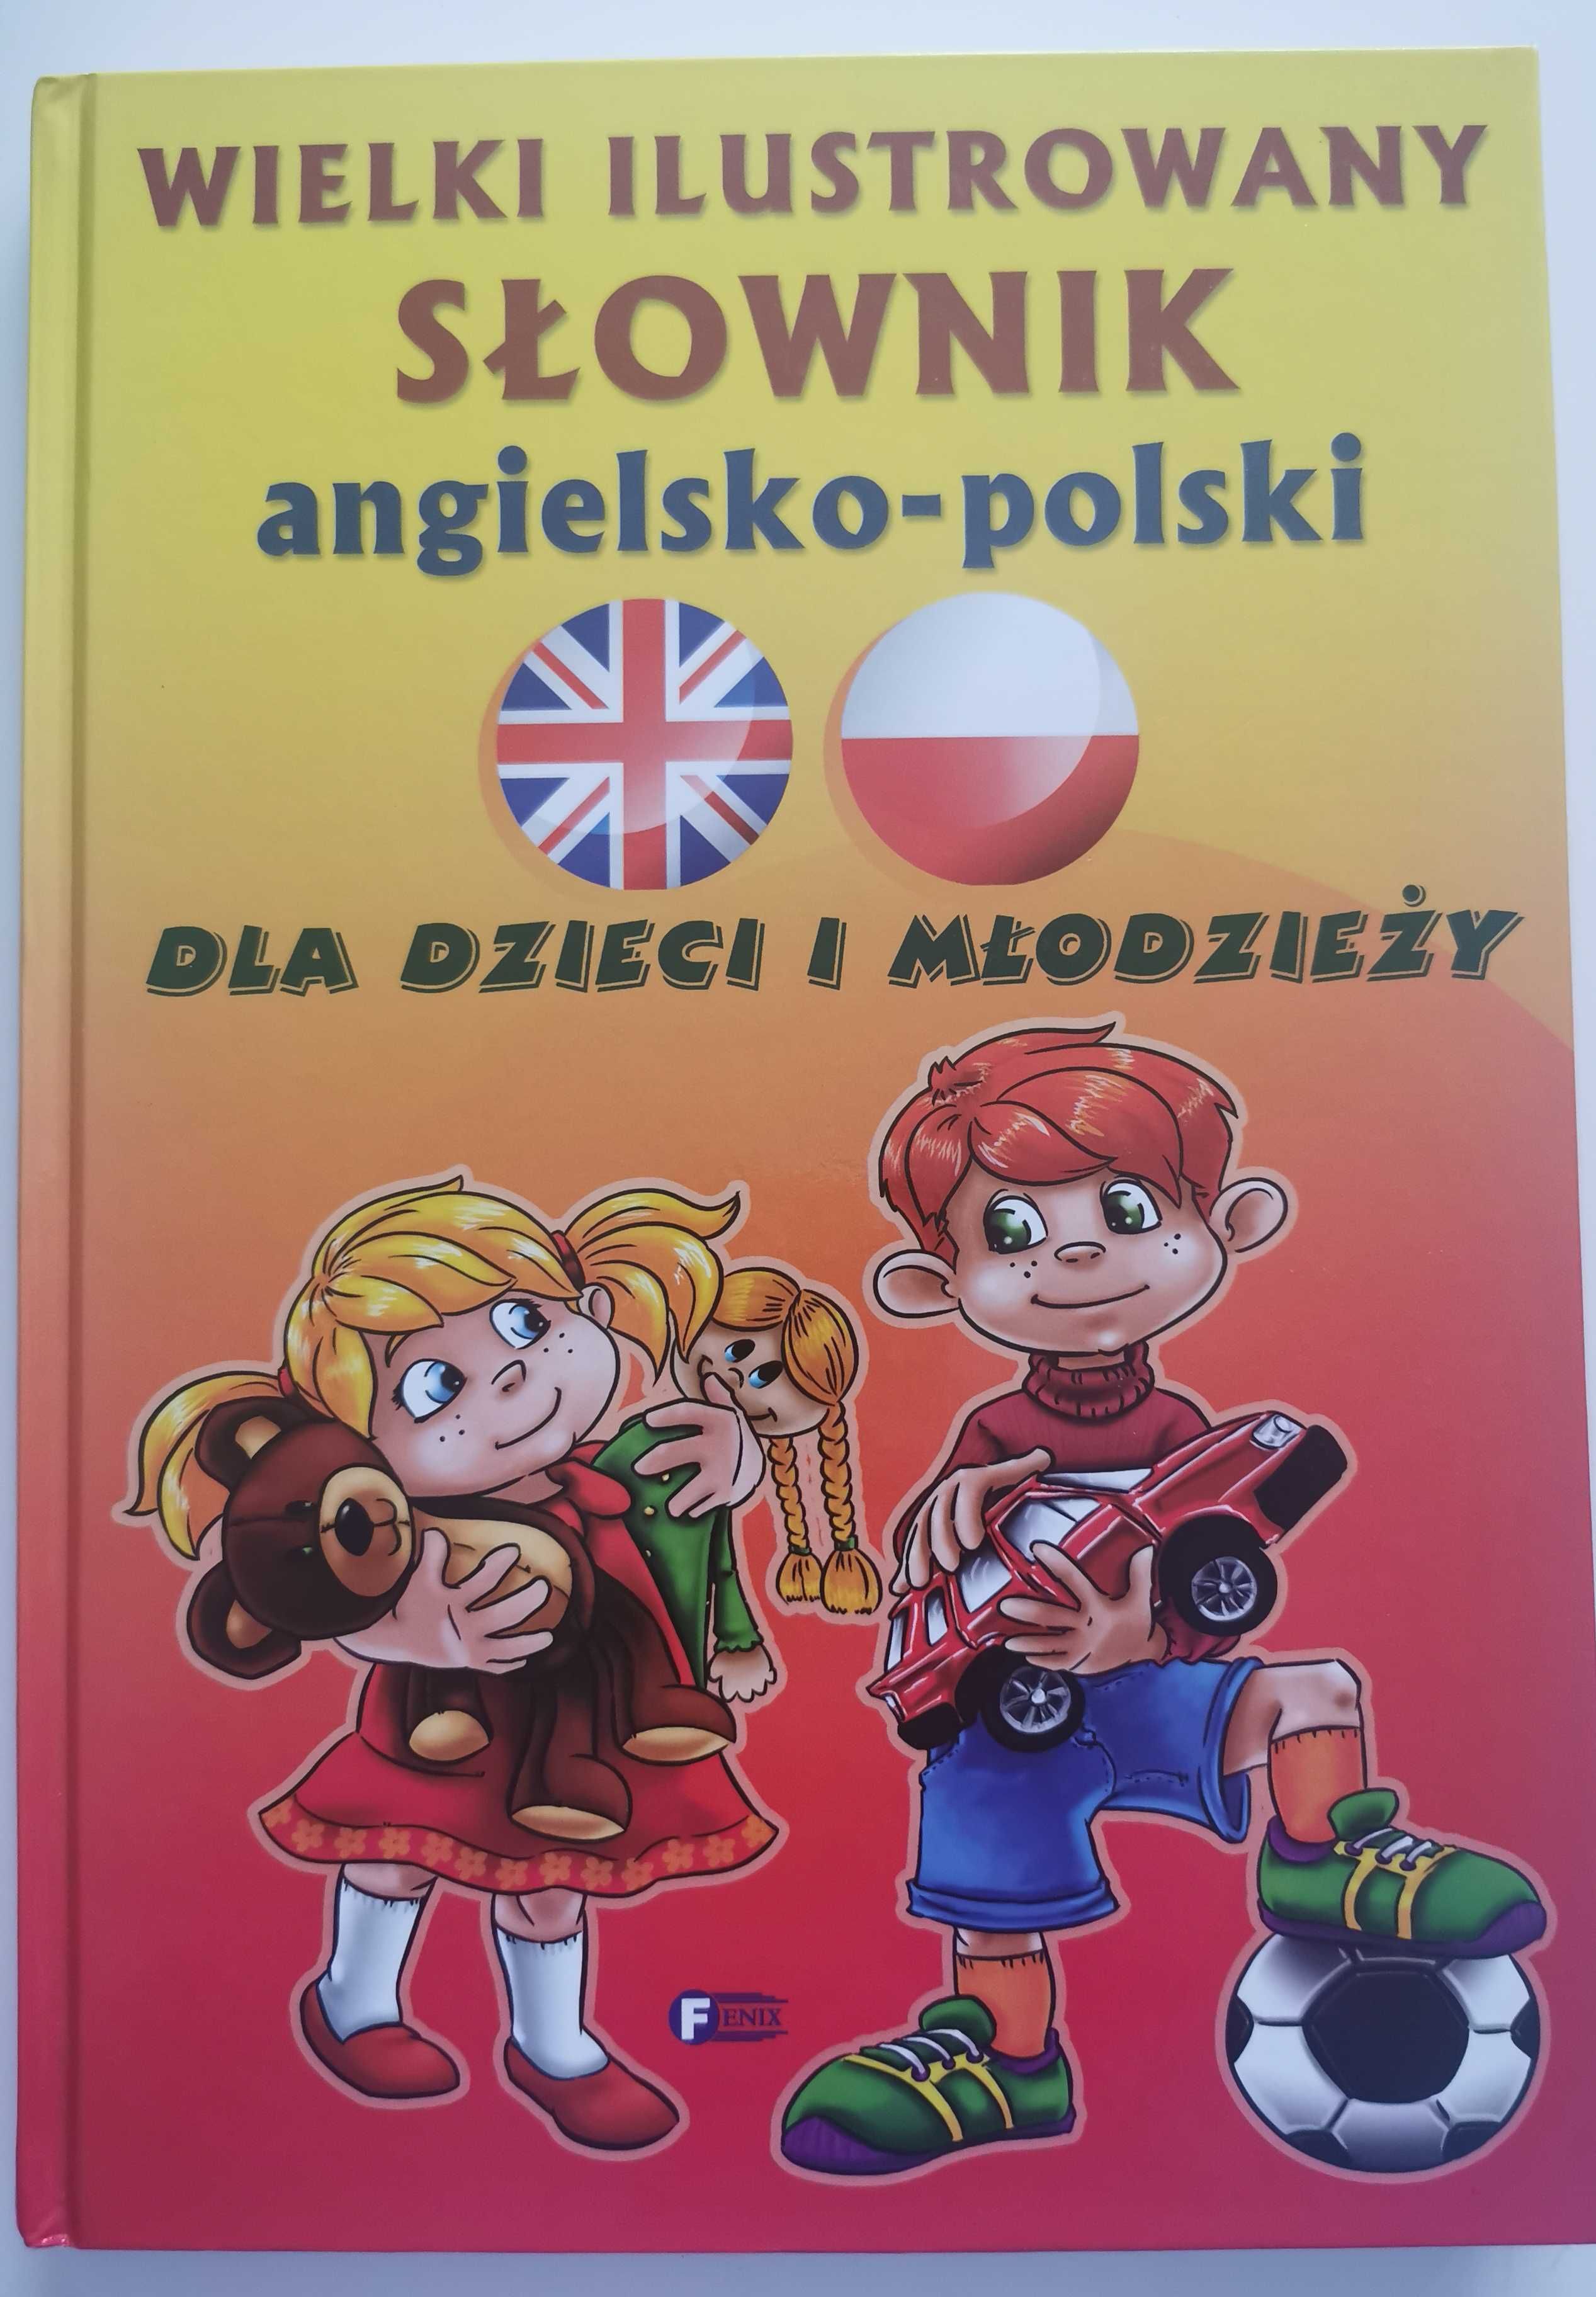 Wielki ilustrowany słownik angielsko-polski dla dzieci twarda okładka